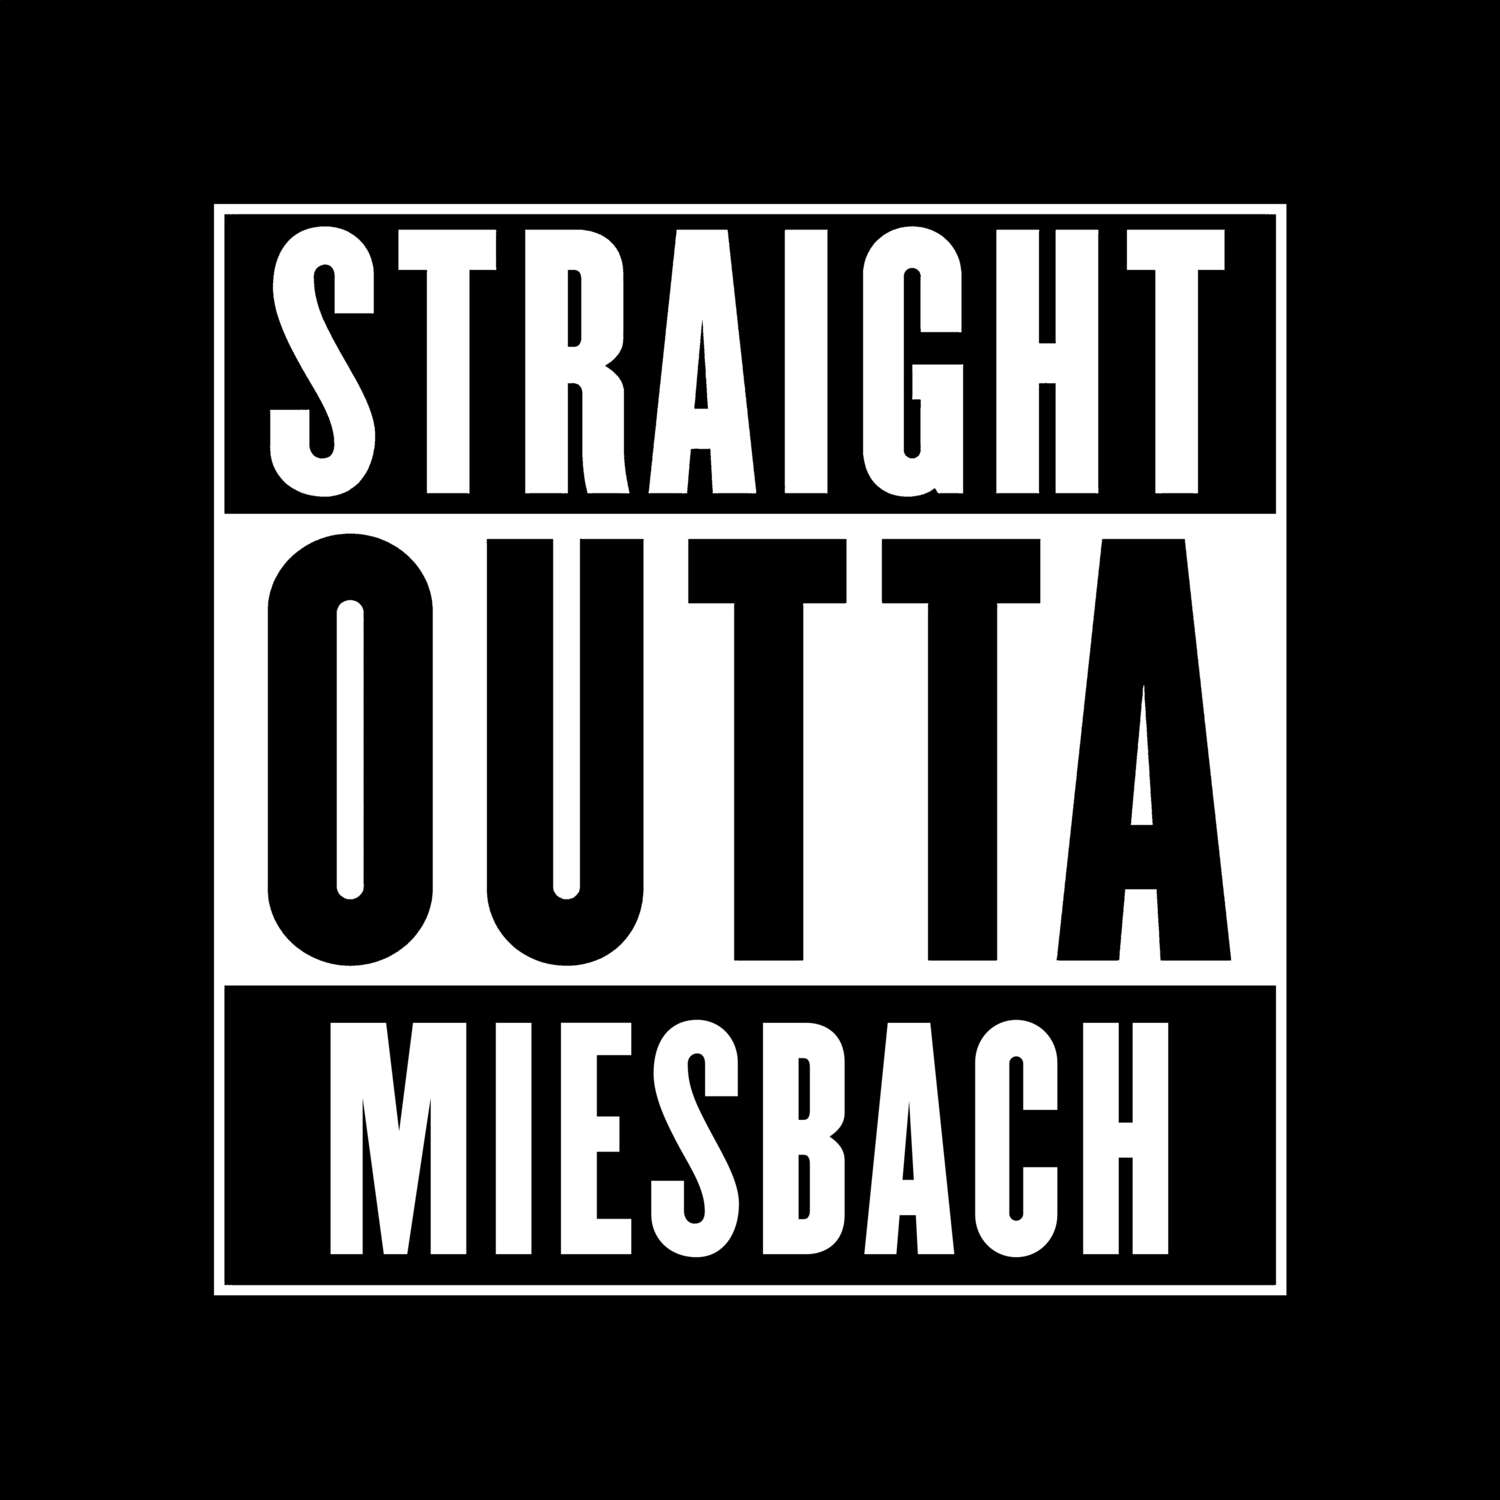 Miesbach T-Shirt »Straight Outta«